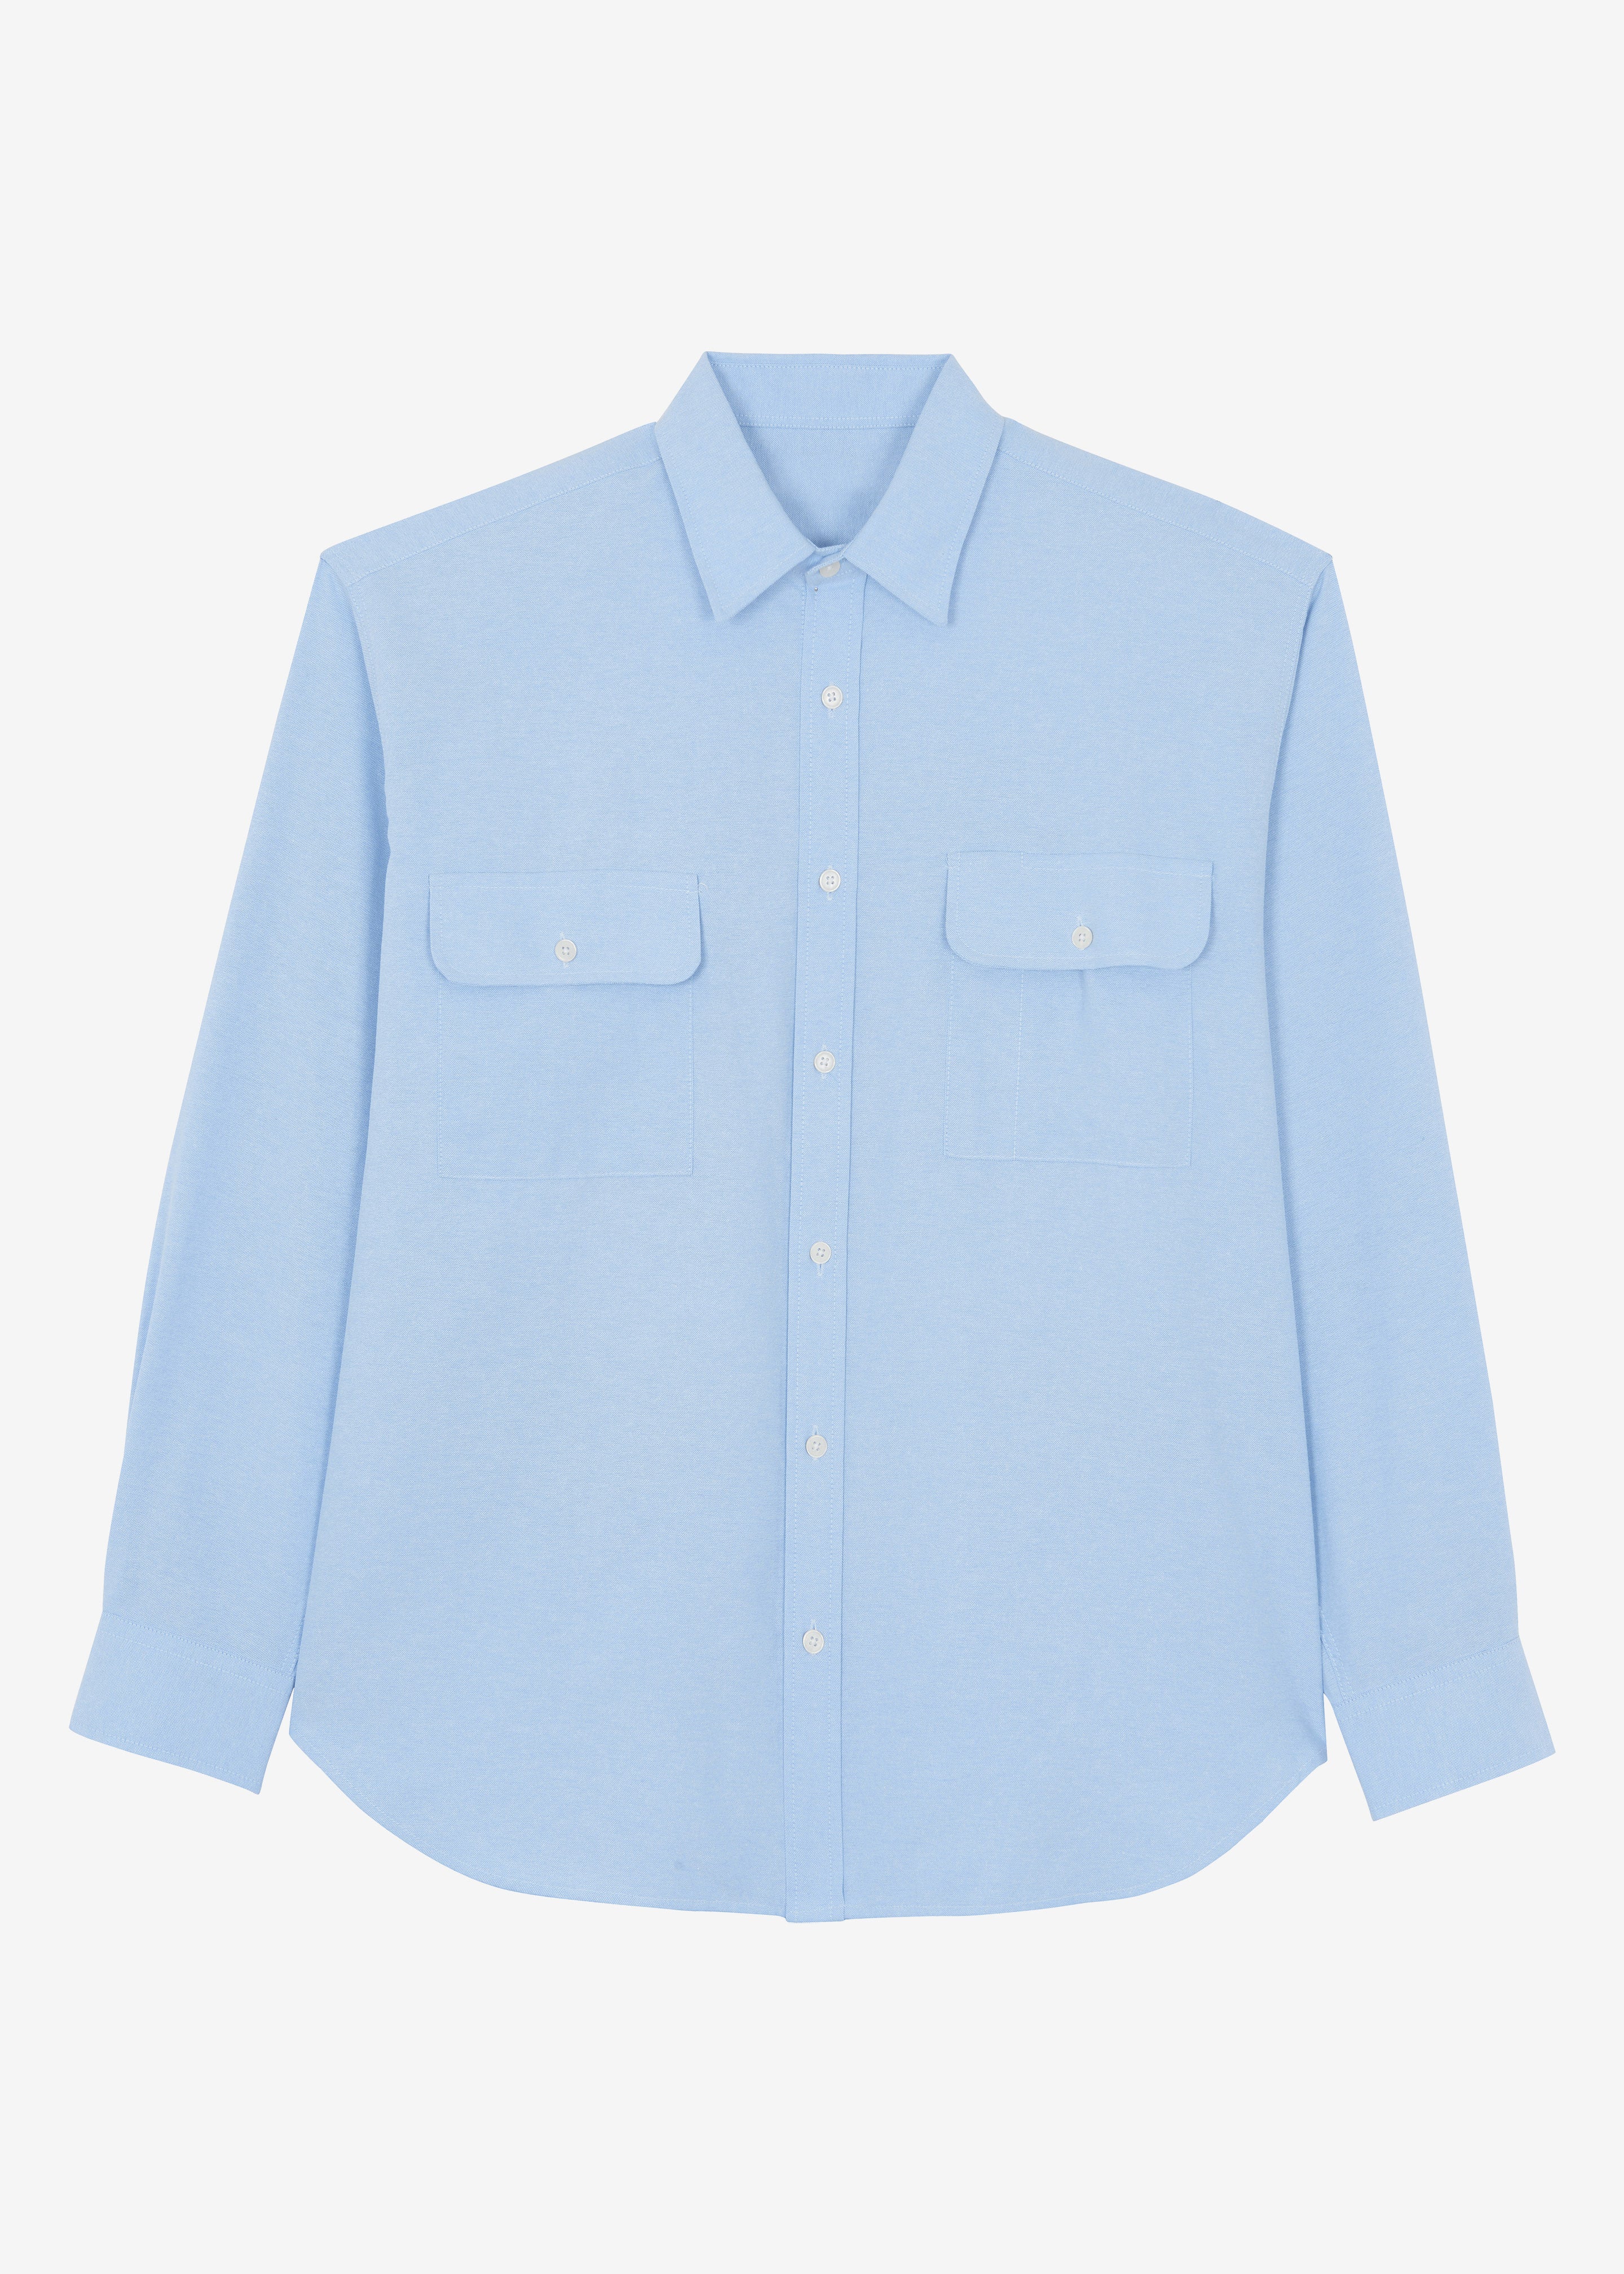 Alexander Button Up Shirt - Blue - 8